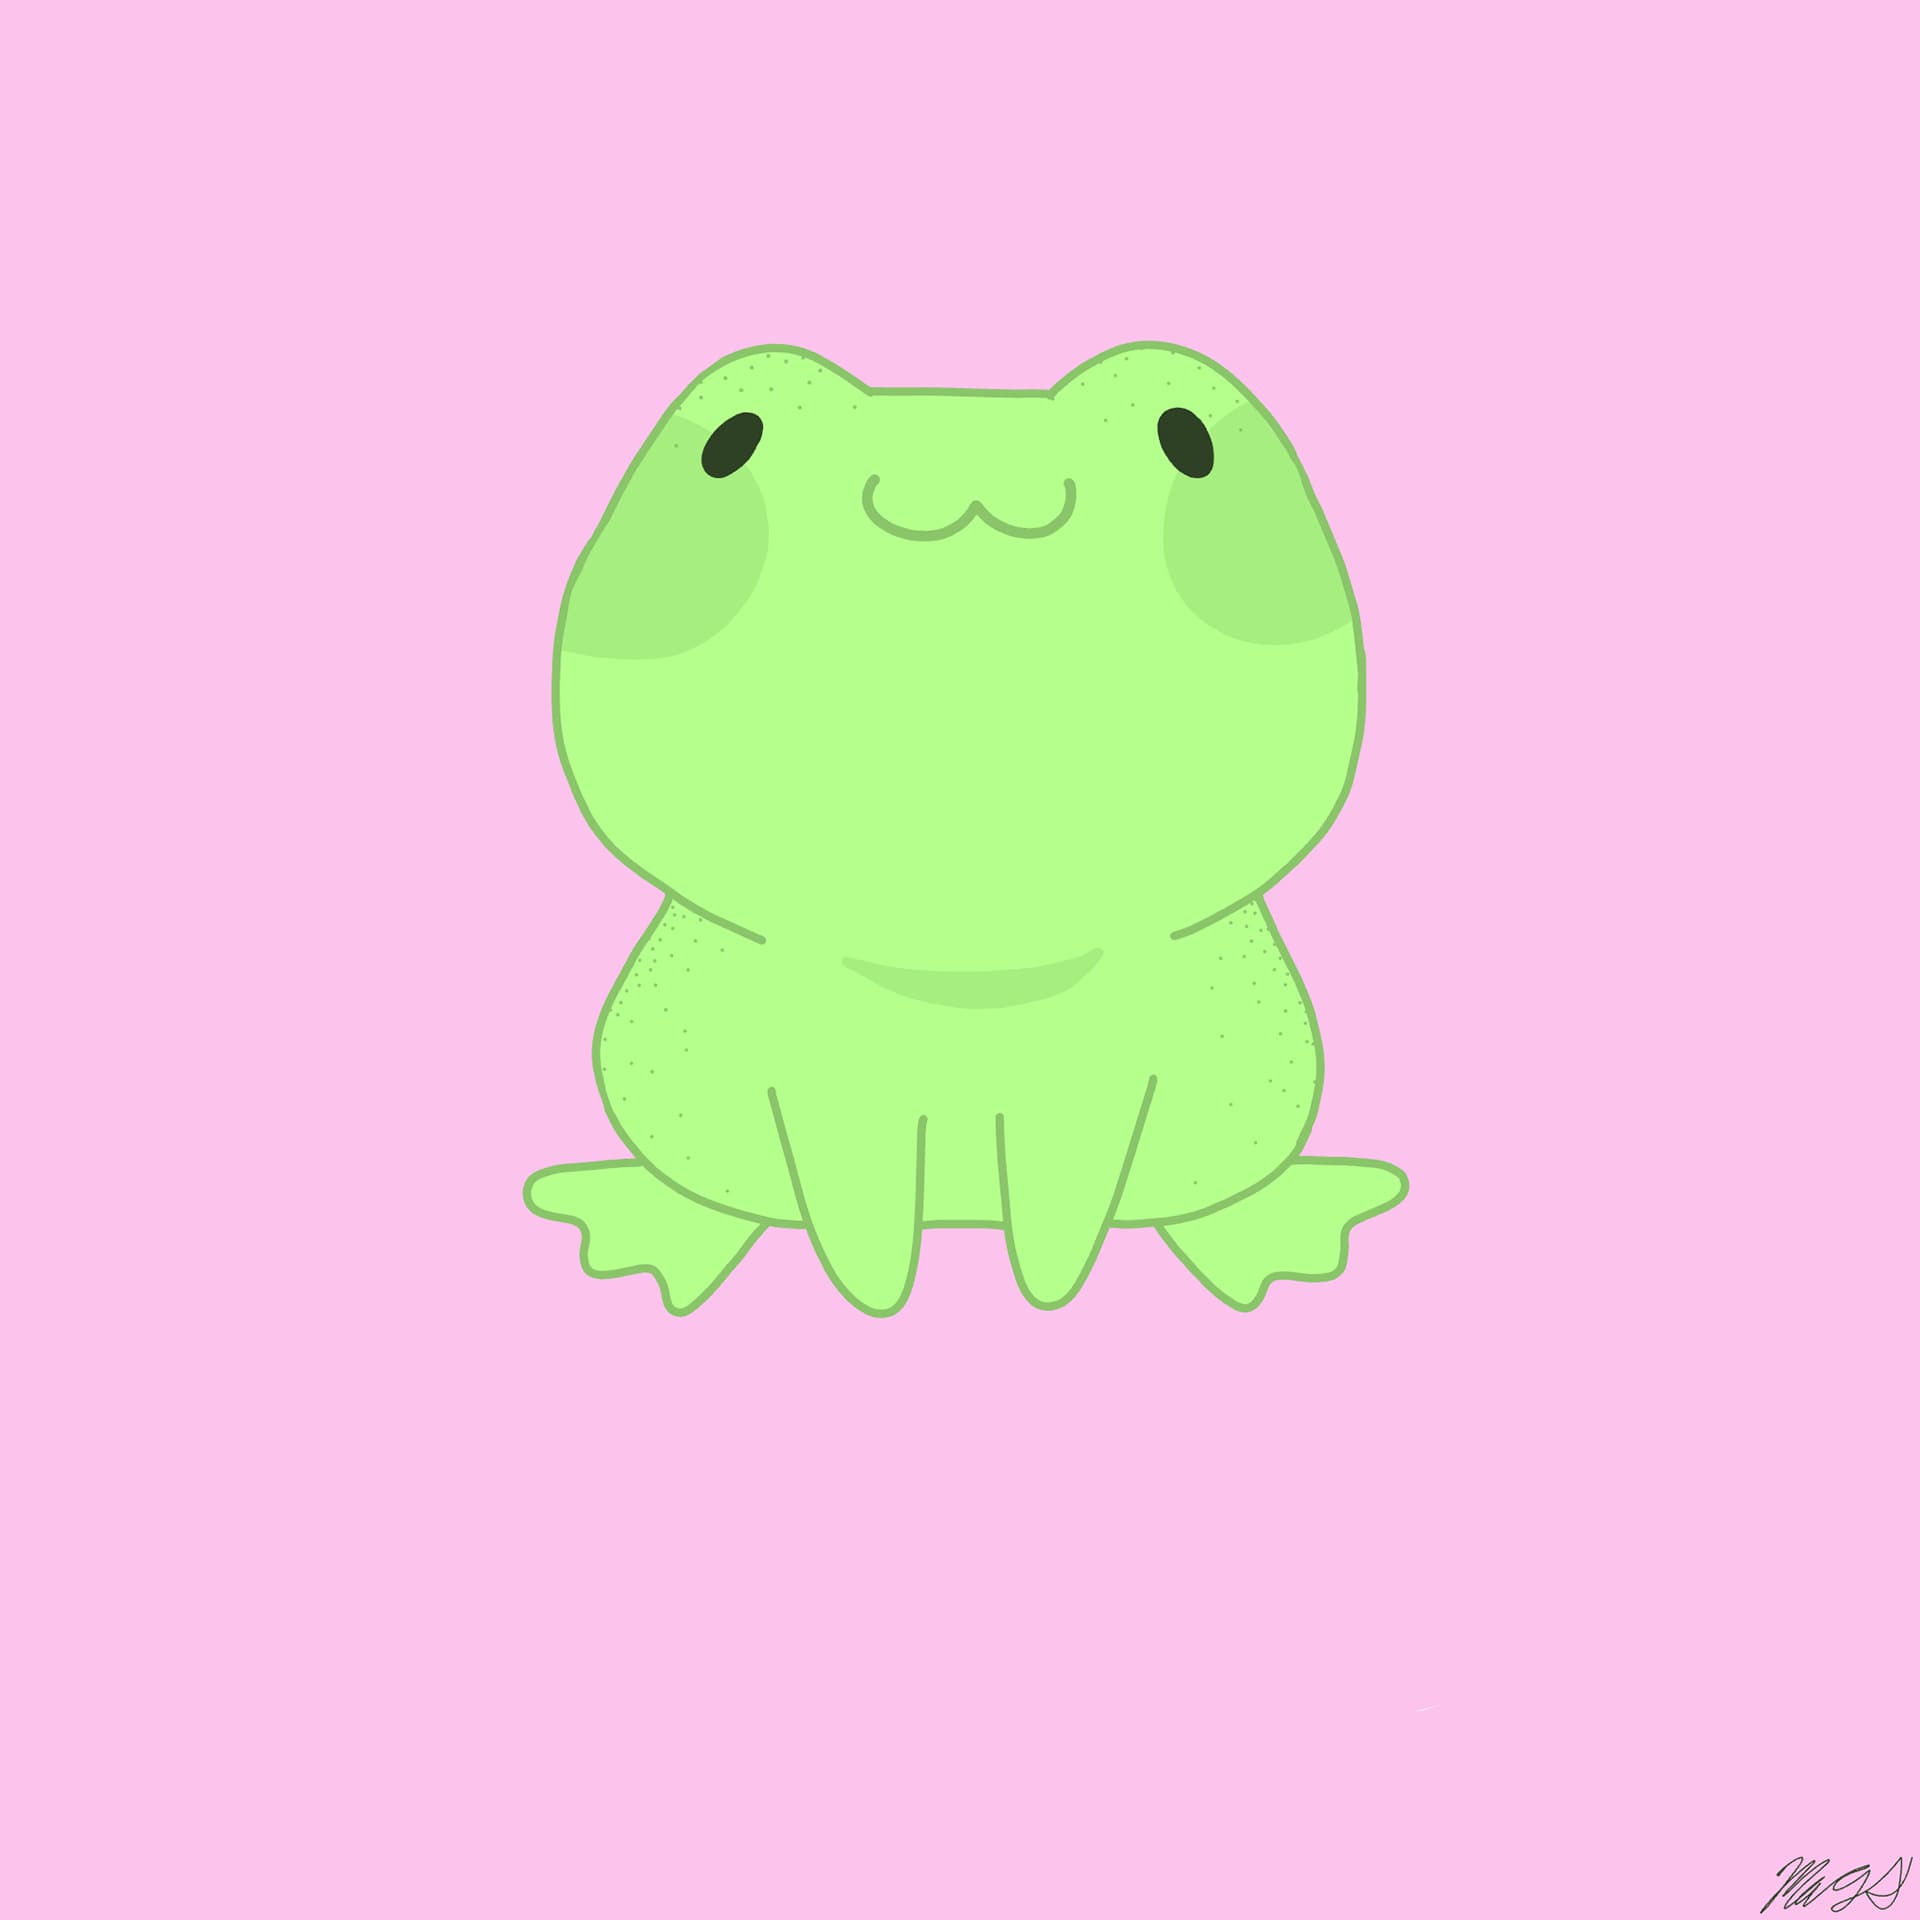 Frog Drawing Images  Free Download on Freepik